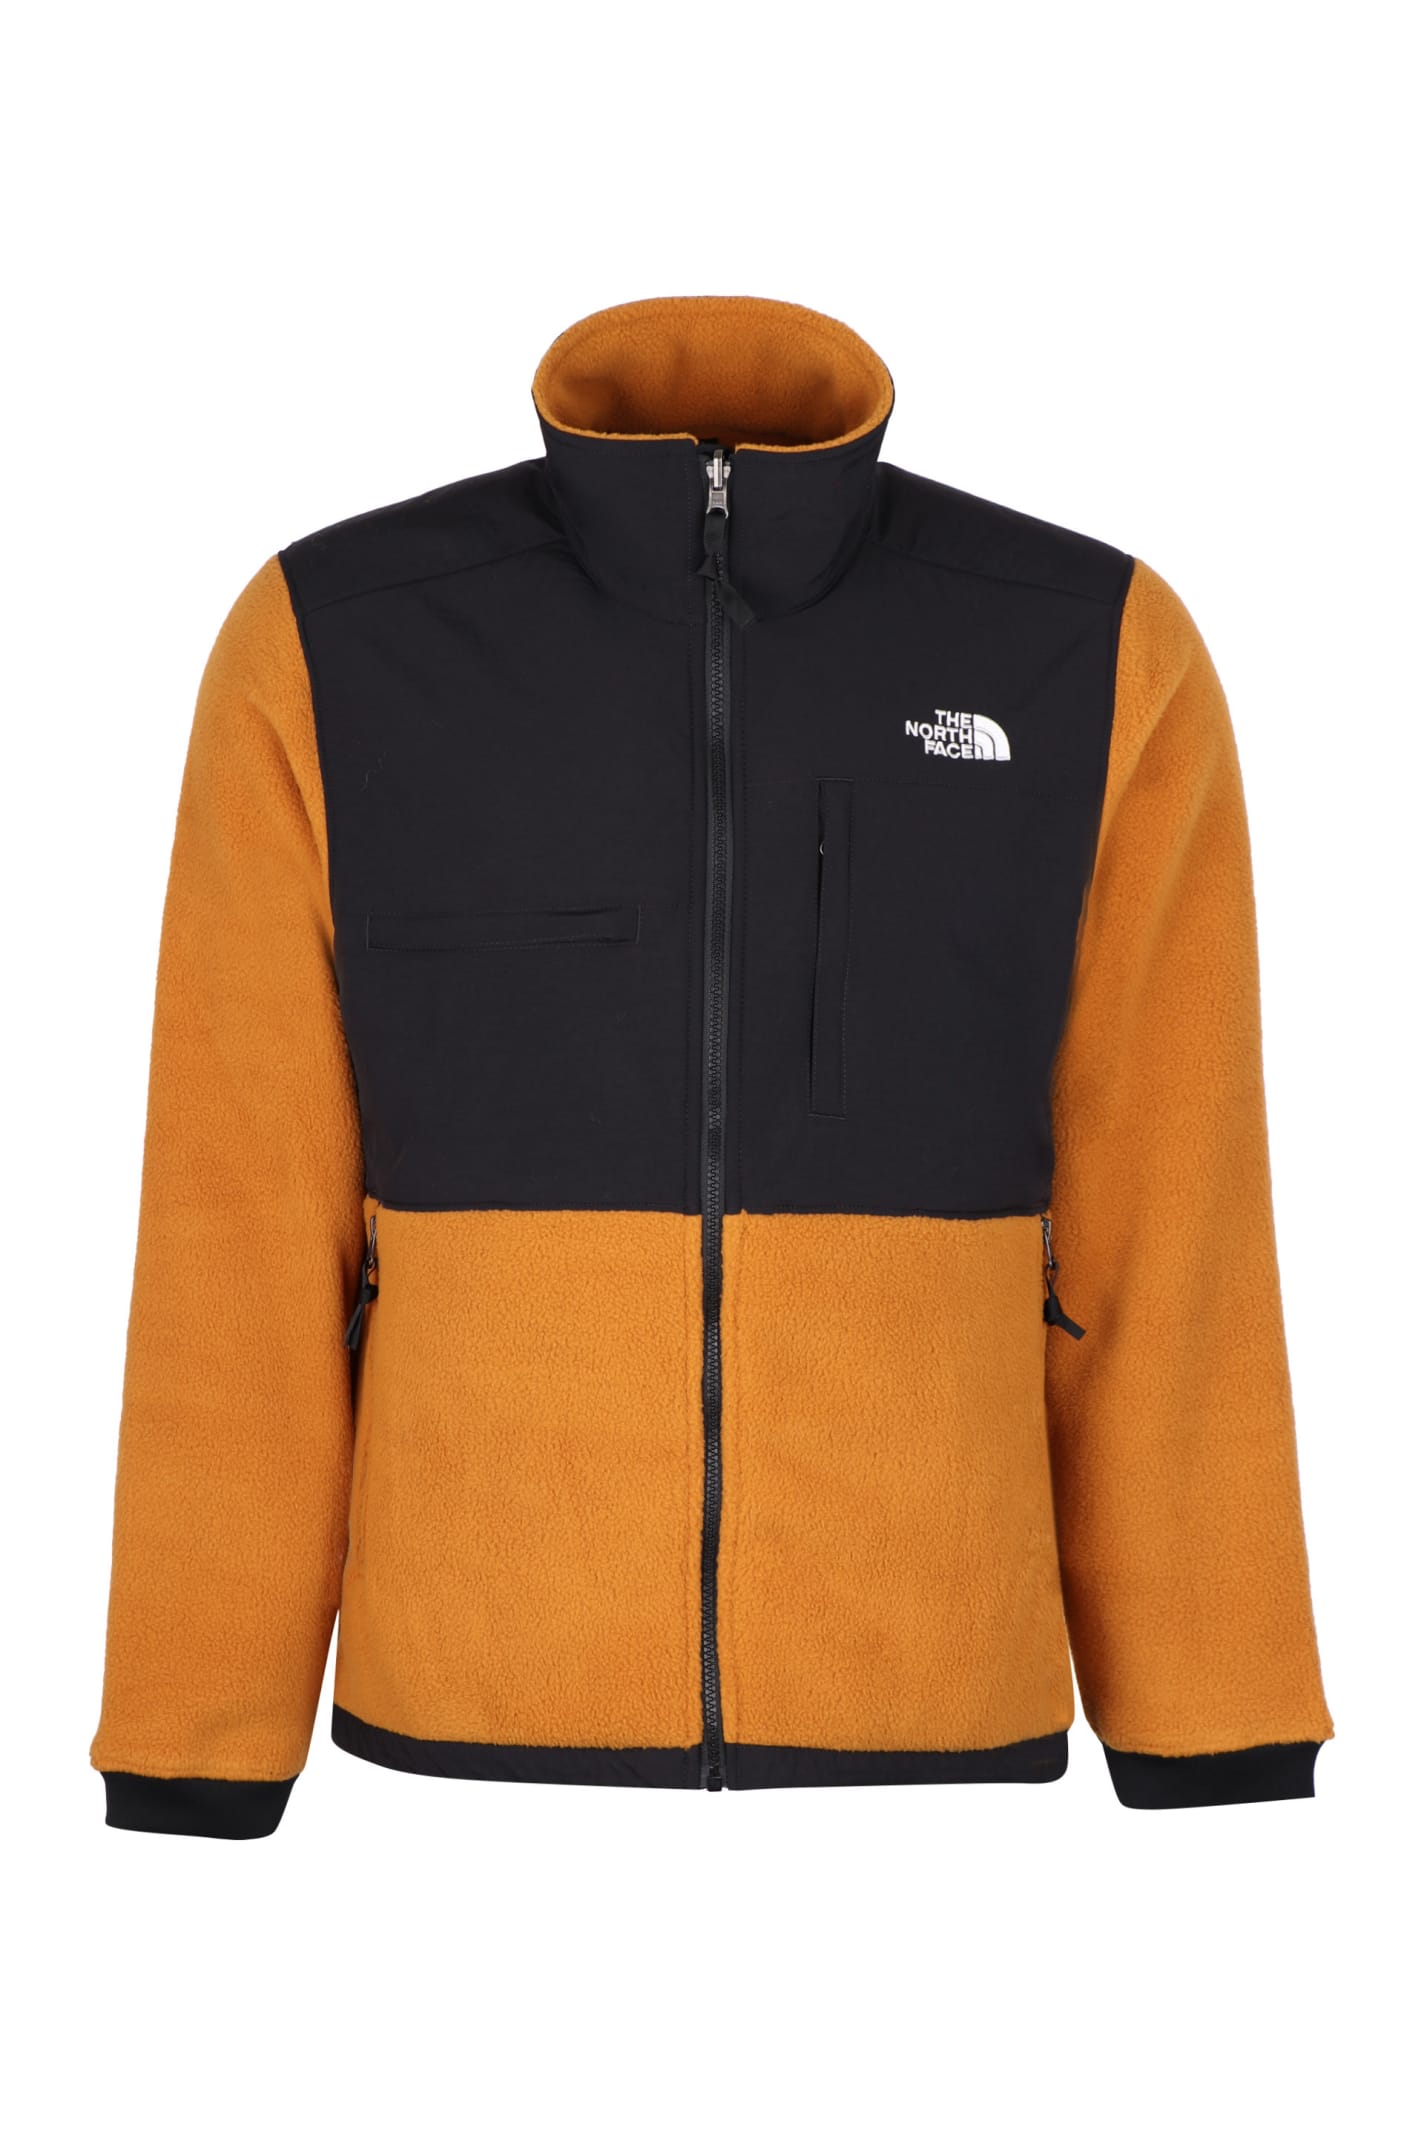 The North Face Fleece Full-zip Jacket